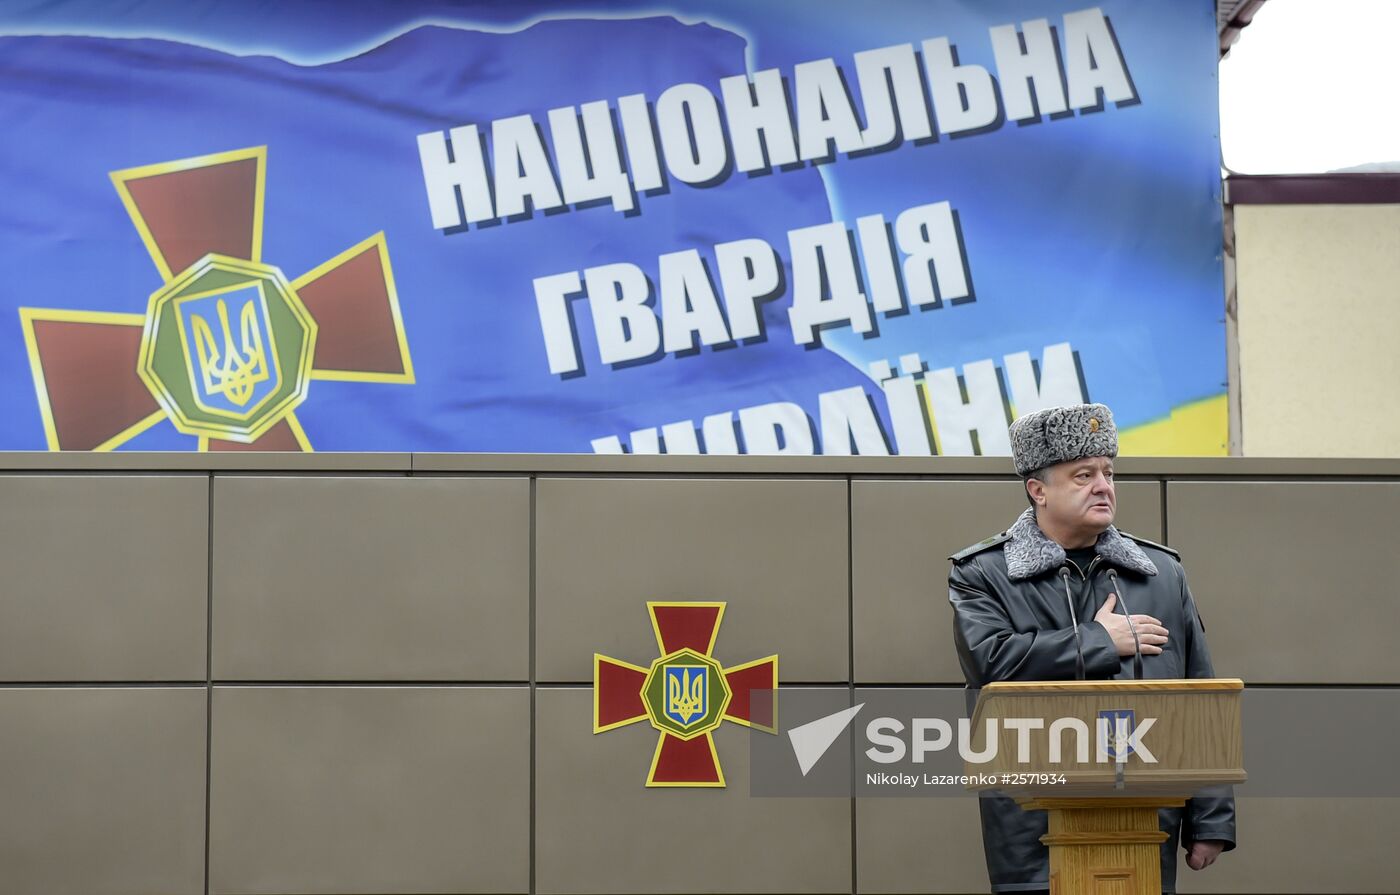 Ukraine's President Poroshenko speaks at National Guard Training Center